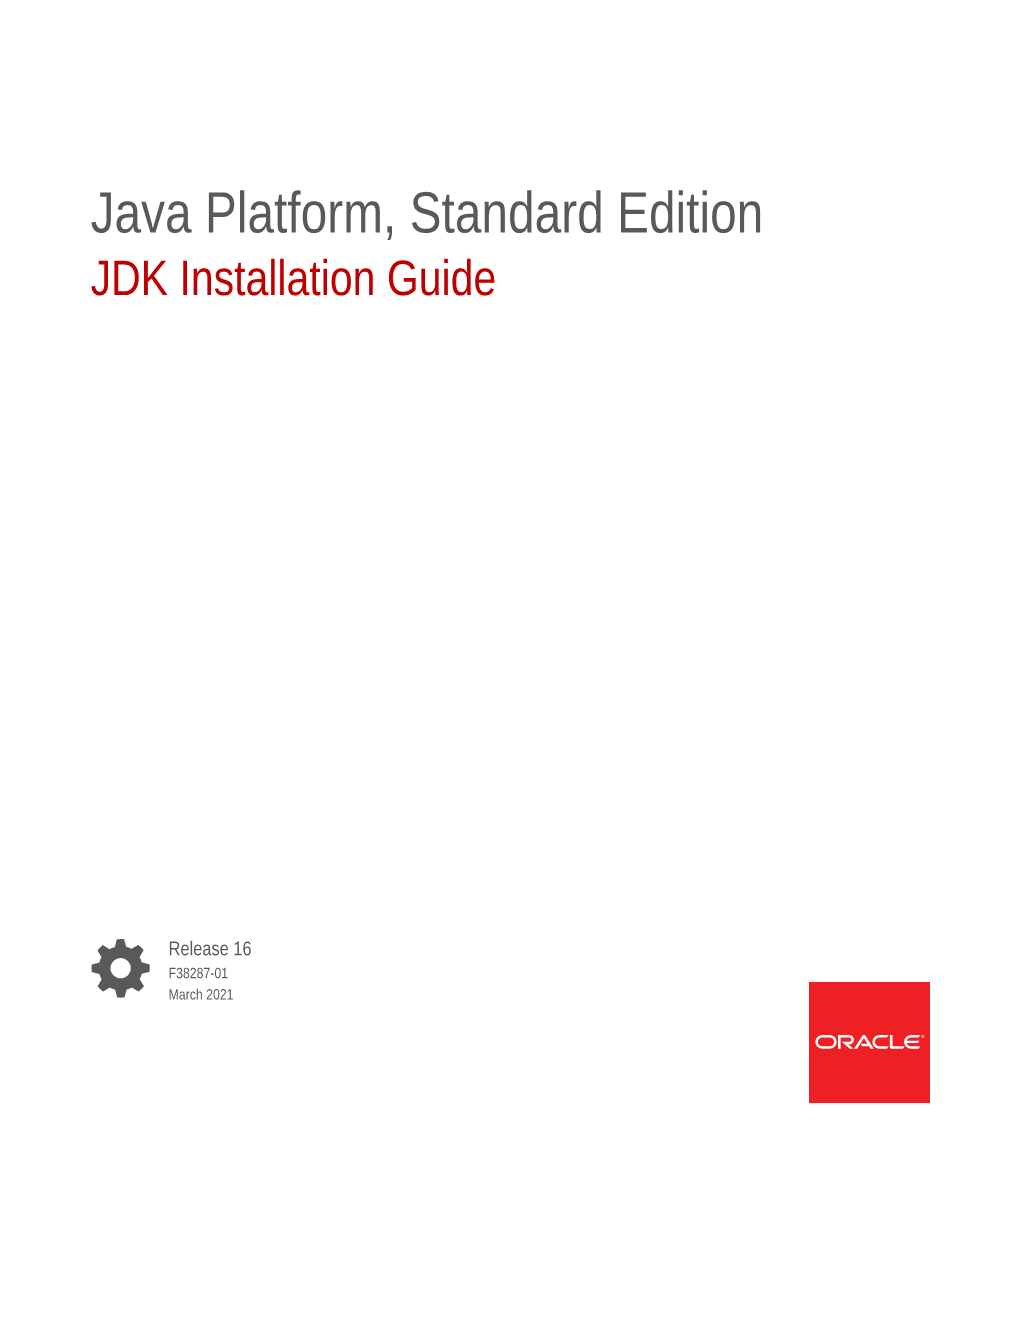 Java Platform, Standard Edition JDK Installation Guide